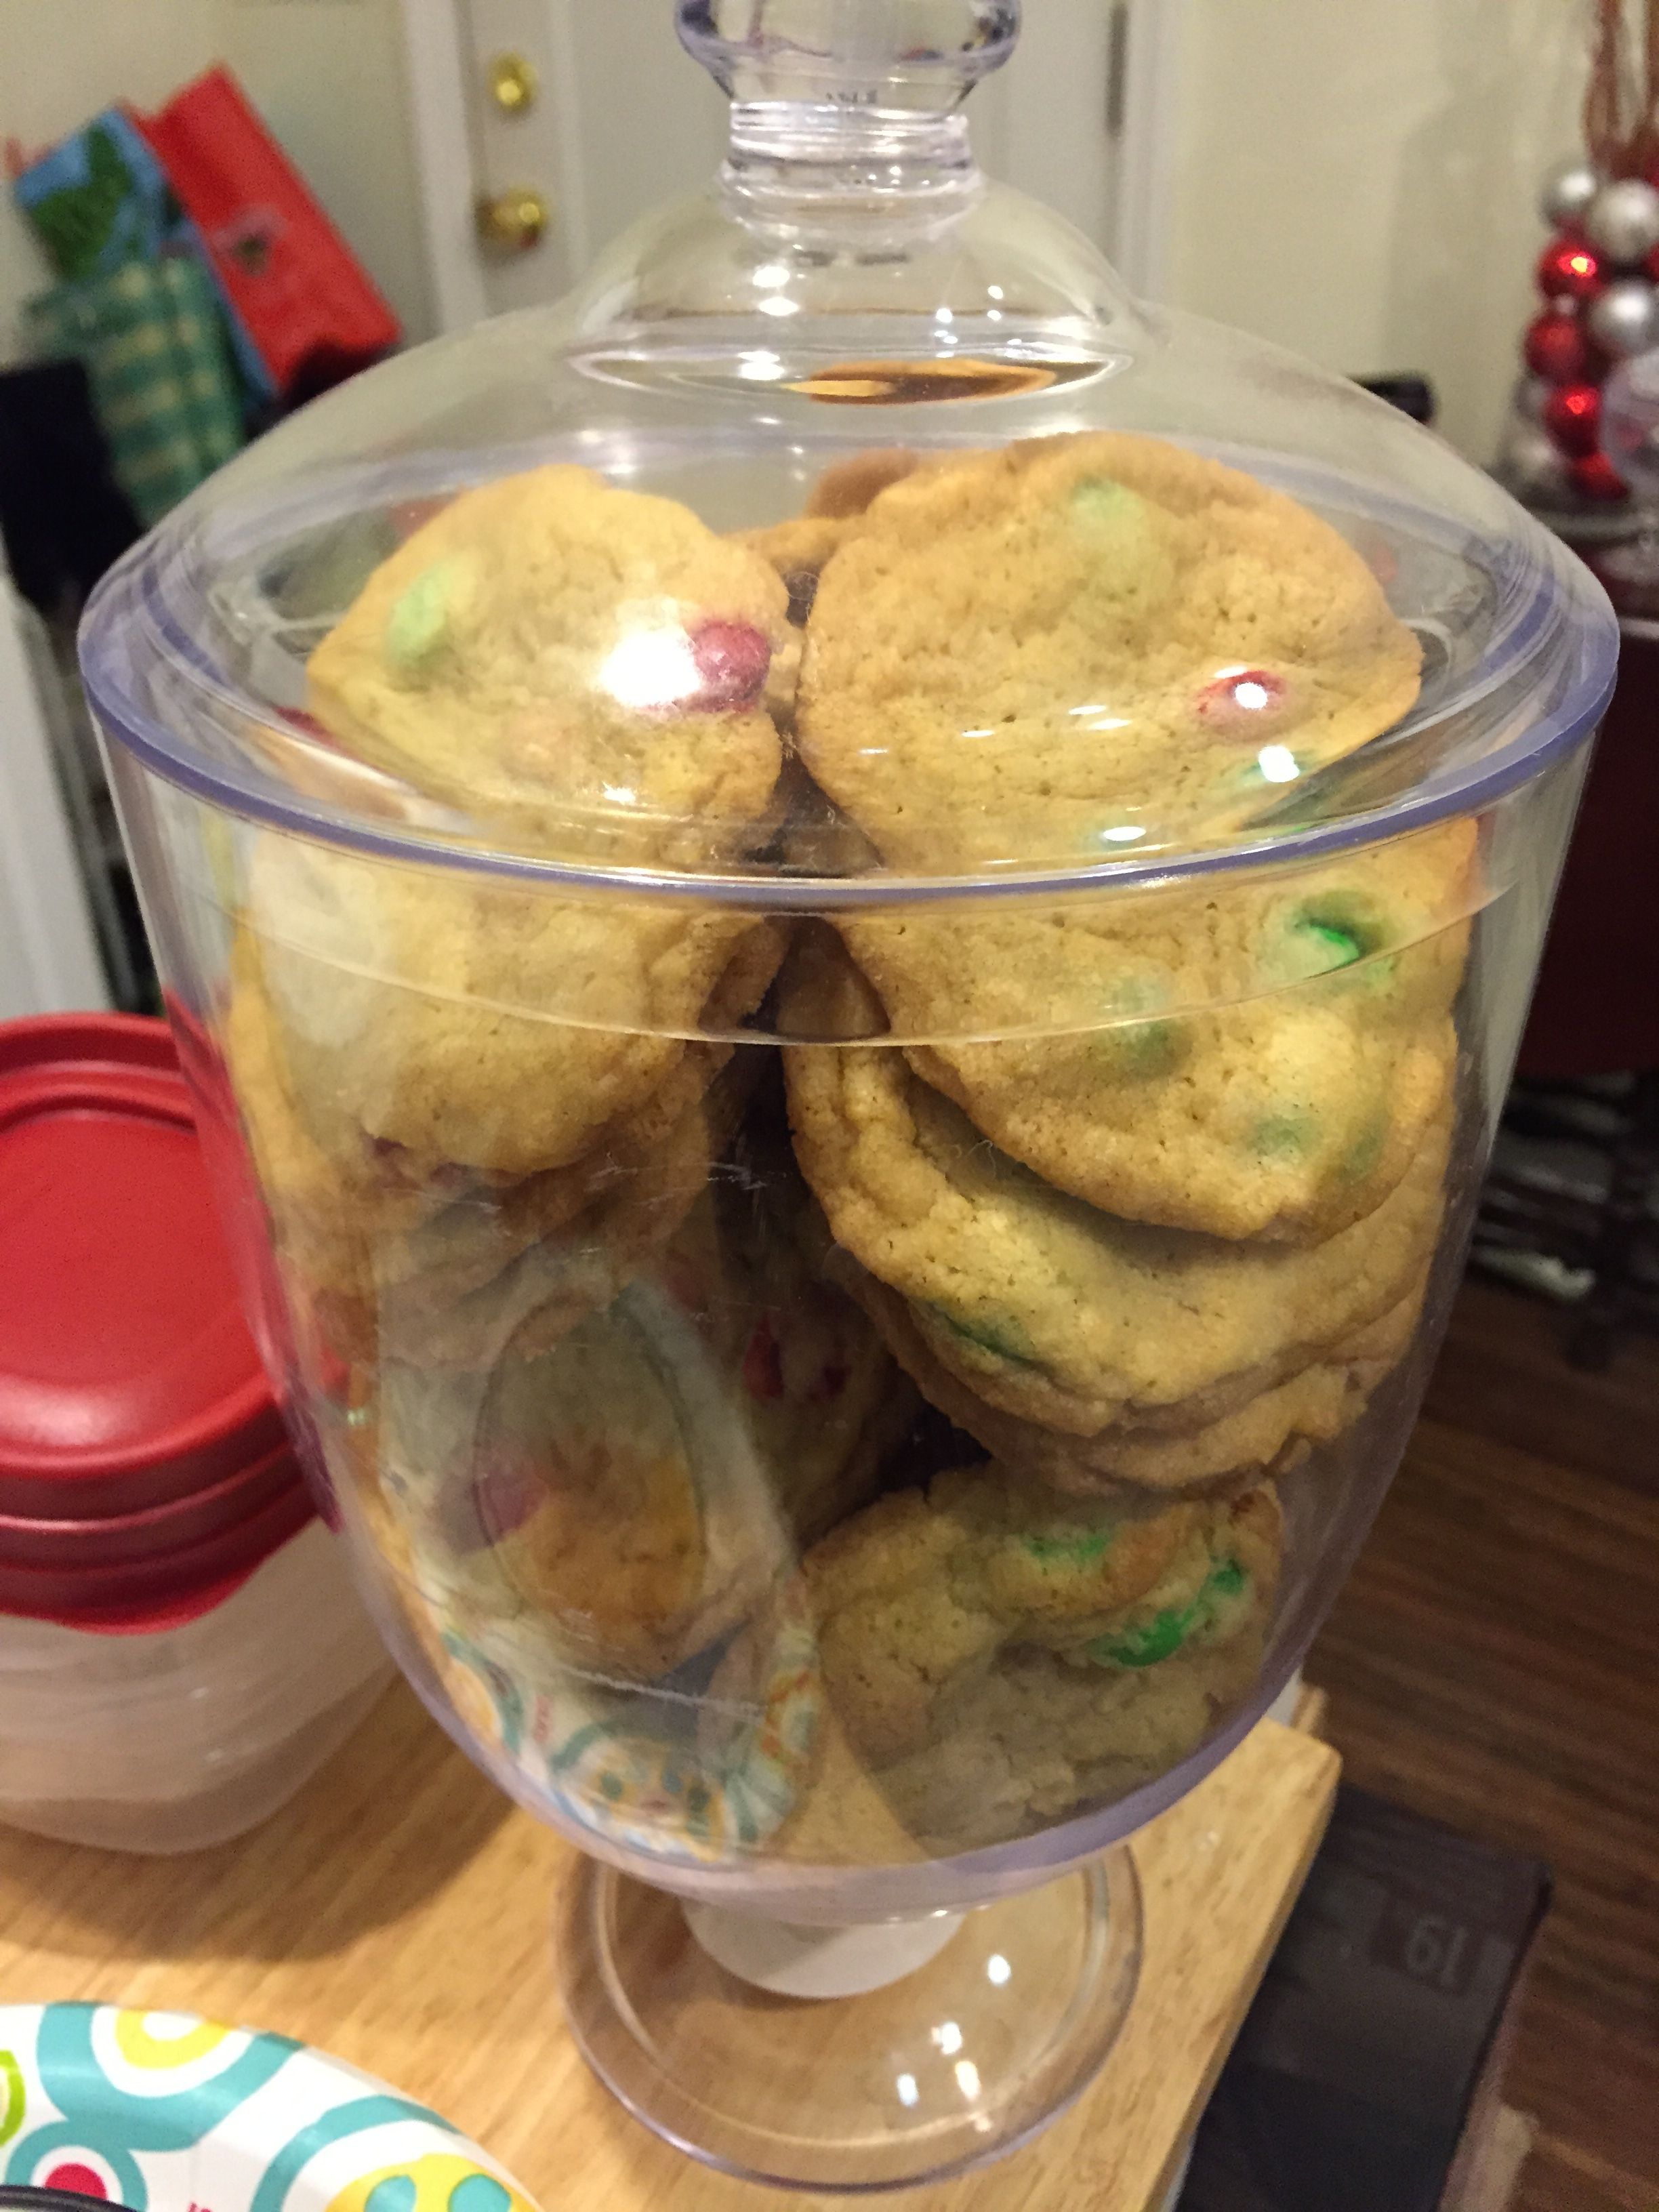 Baked Cookies